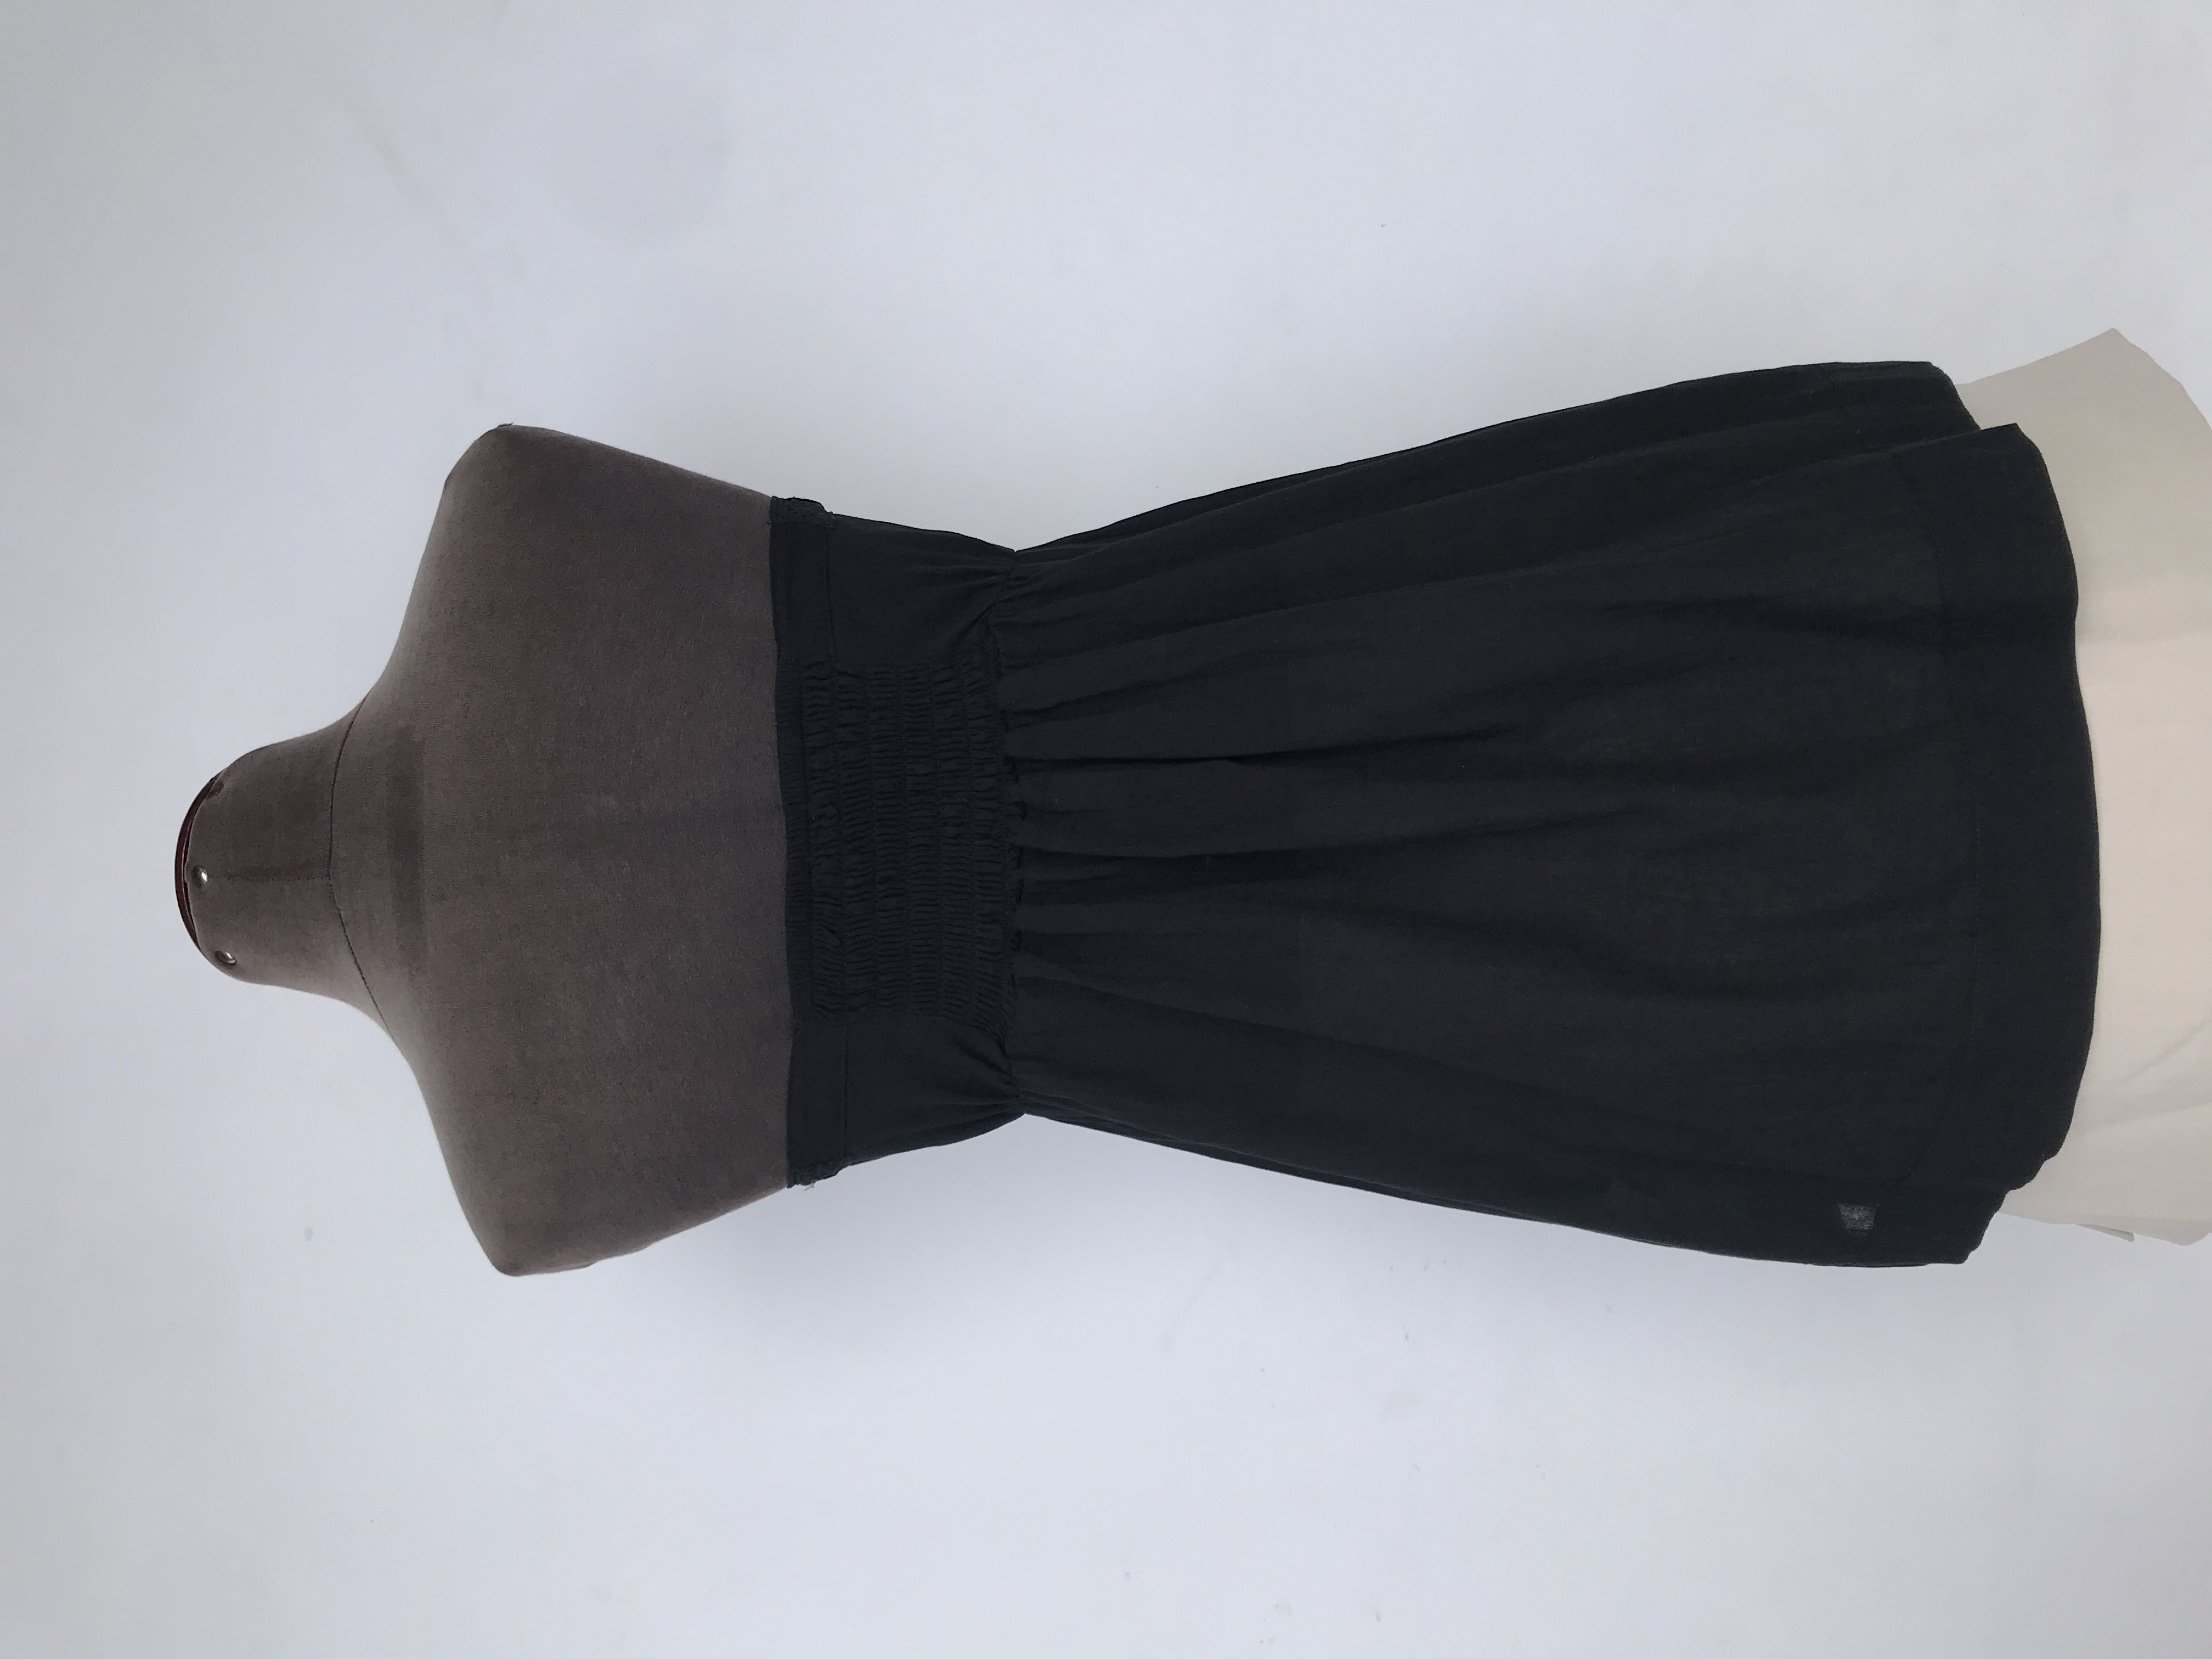 Blusa strapless Moda & Cia negra con lazo para amarrar en el escote y detalles de guipure en el delantero, panal de abeja posterior, 100% algodón
Talla S